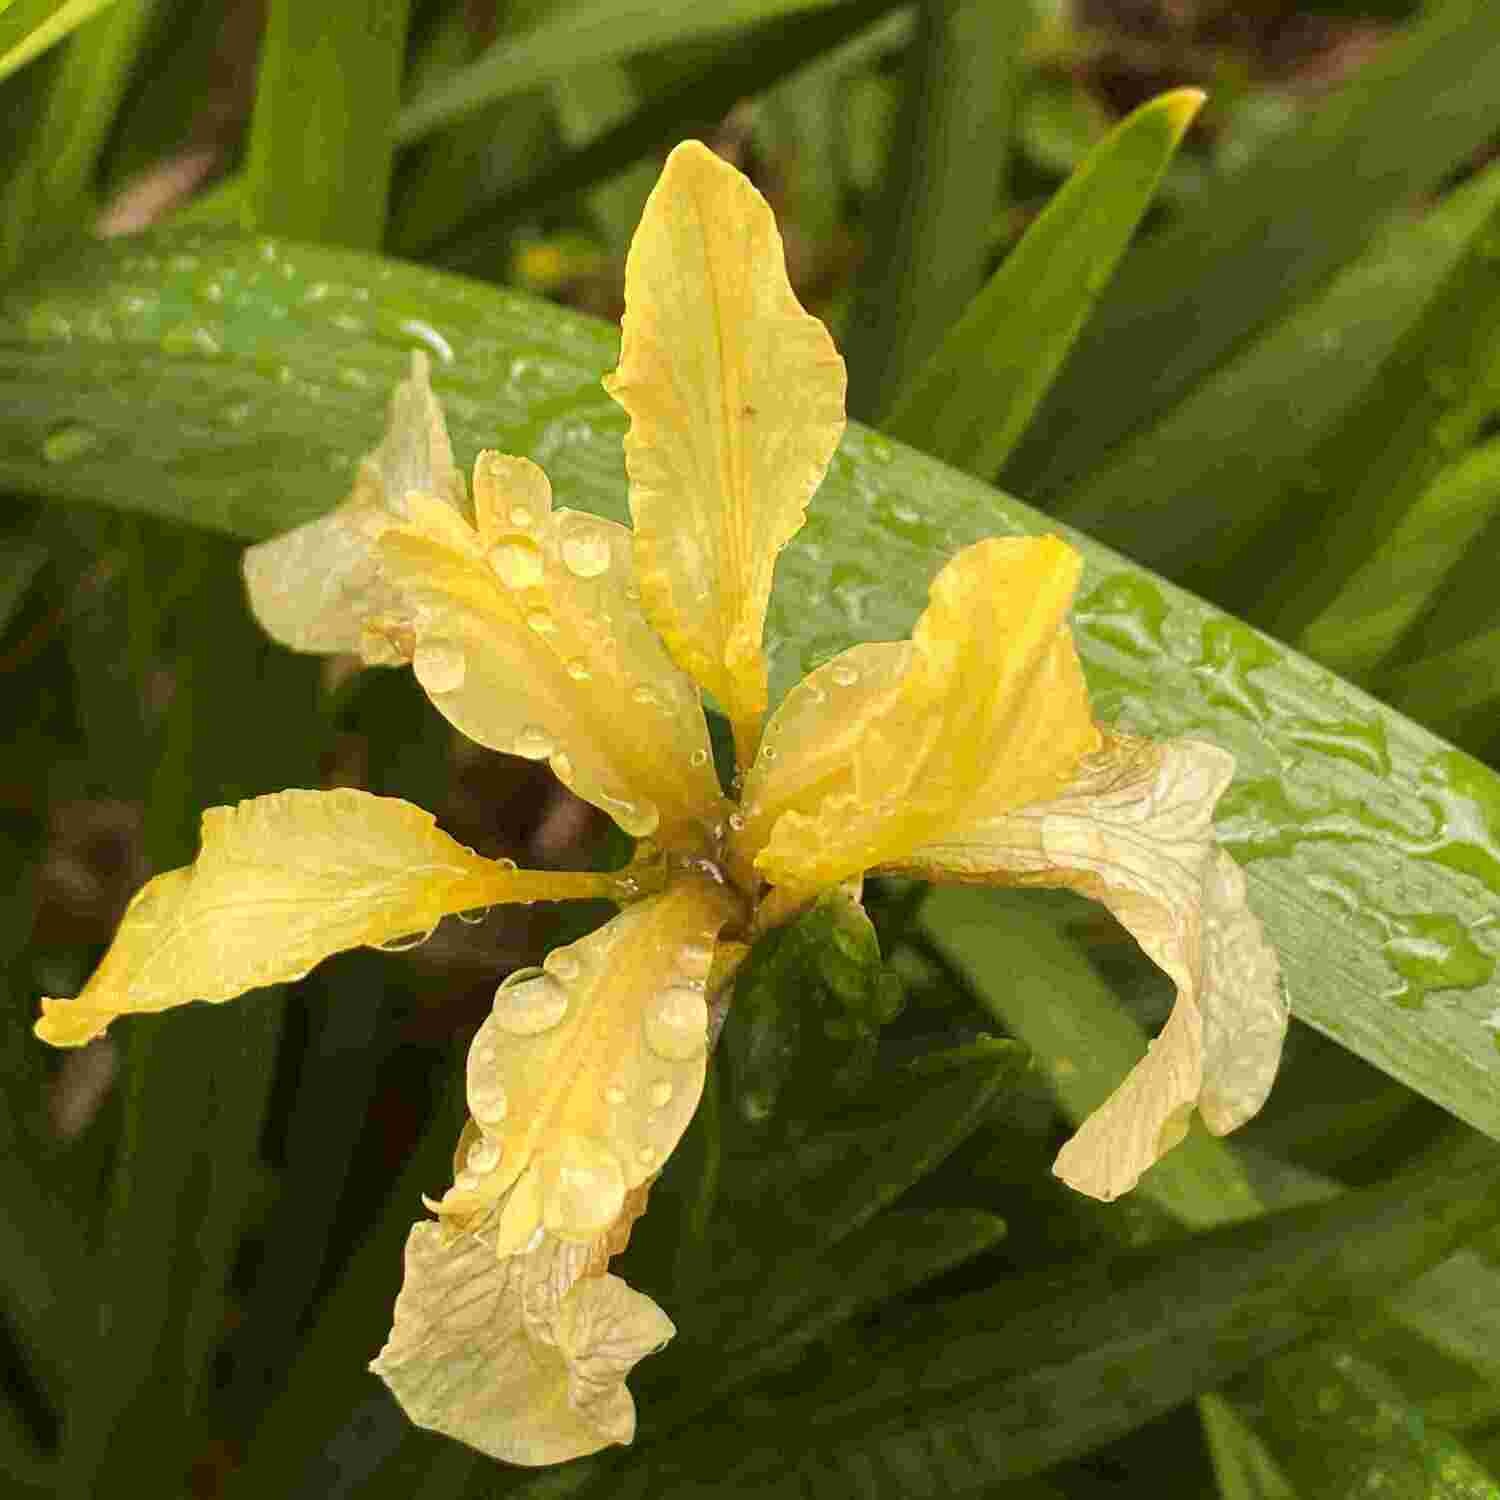 Orange seeded iris (Iris foetidissima)